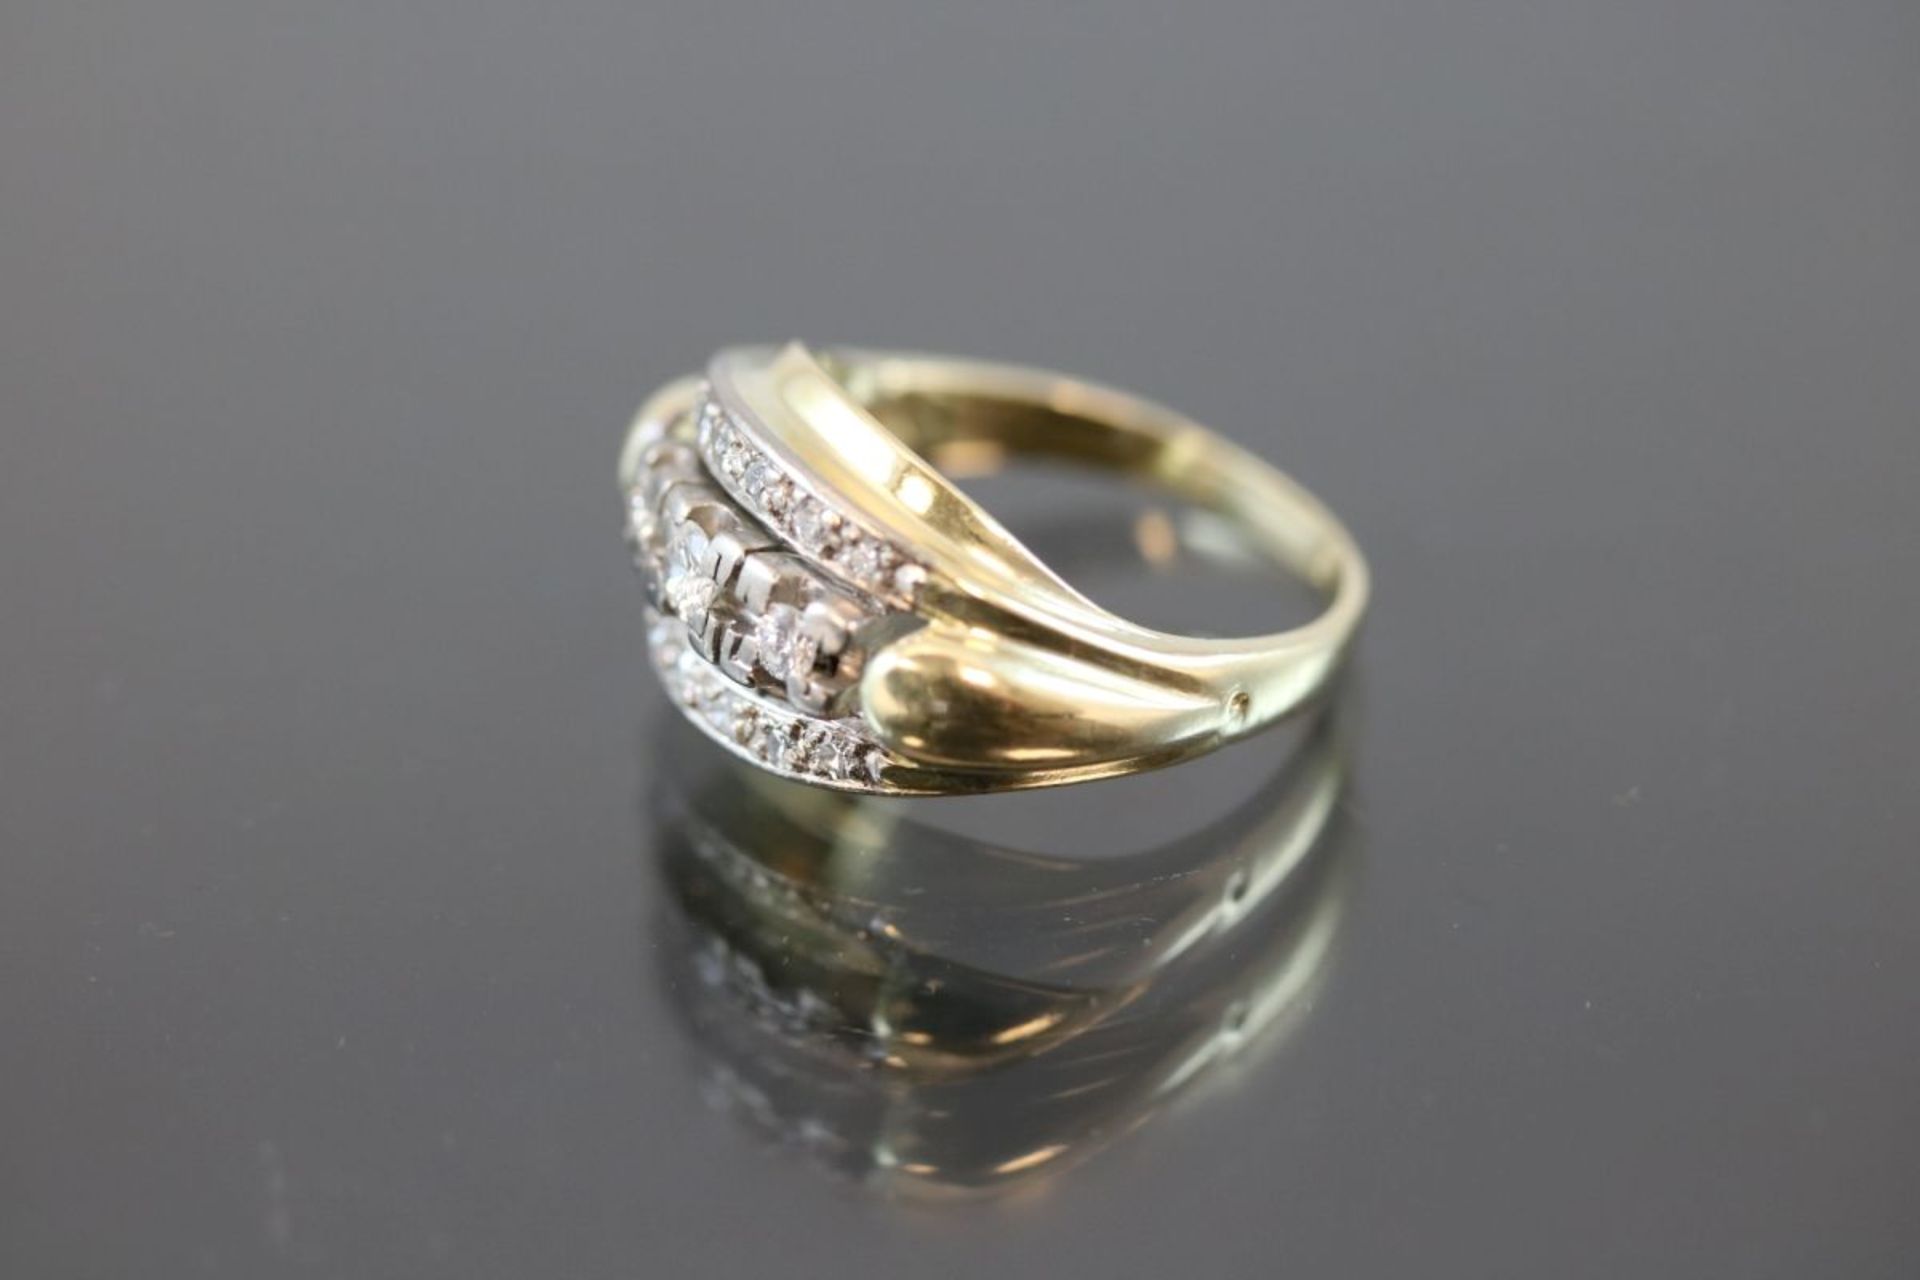 Brillant-Diamant-Ring, 585 Gelbgold4,9 Gramm Brillanten/Diamanten, ca. 0,30 ct., w/si. Ringgröße: - Bild 2 aus 3